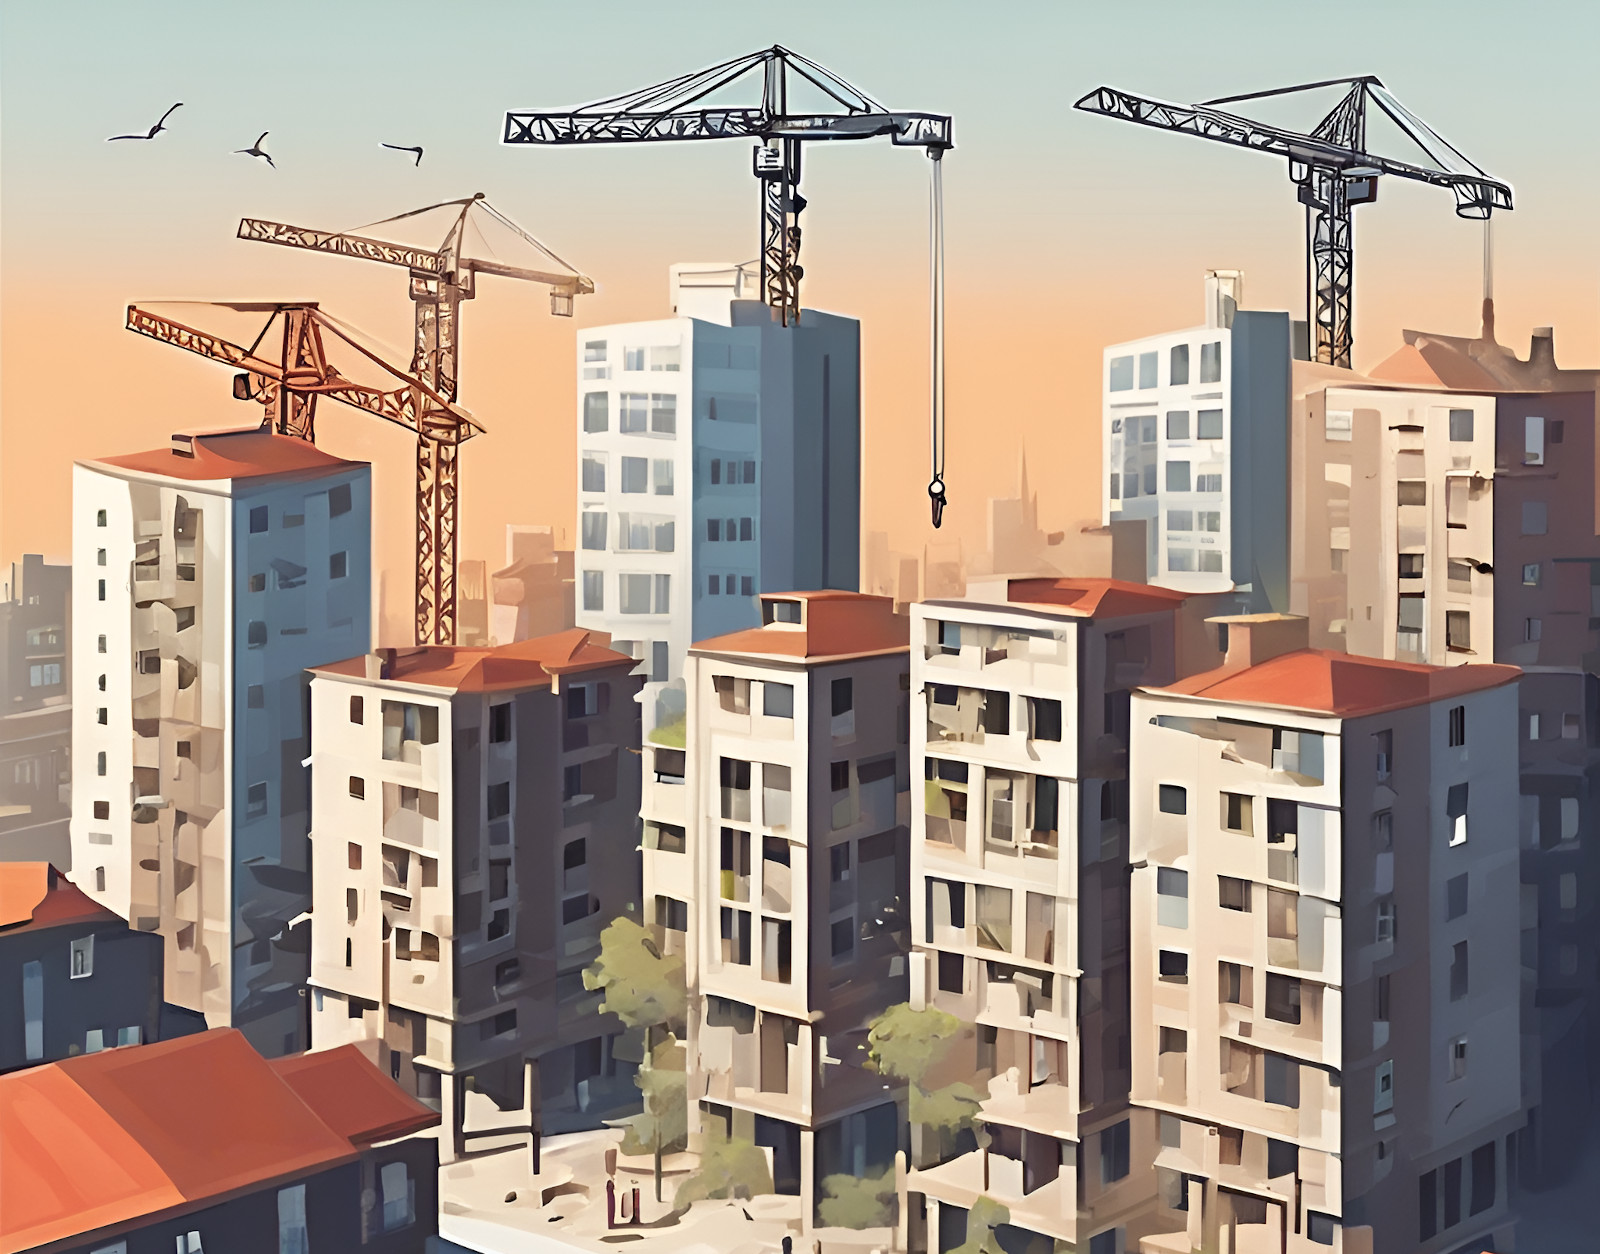 Stadt Restrukturierung Insolvenzen Wachstum (Illustration)